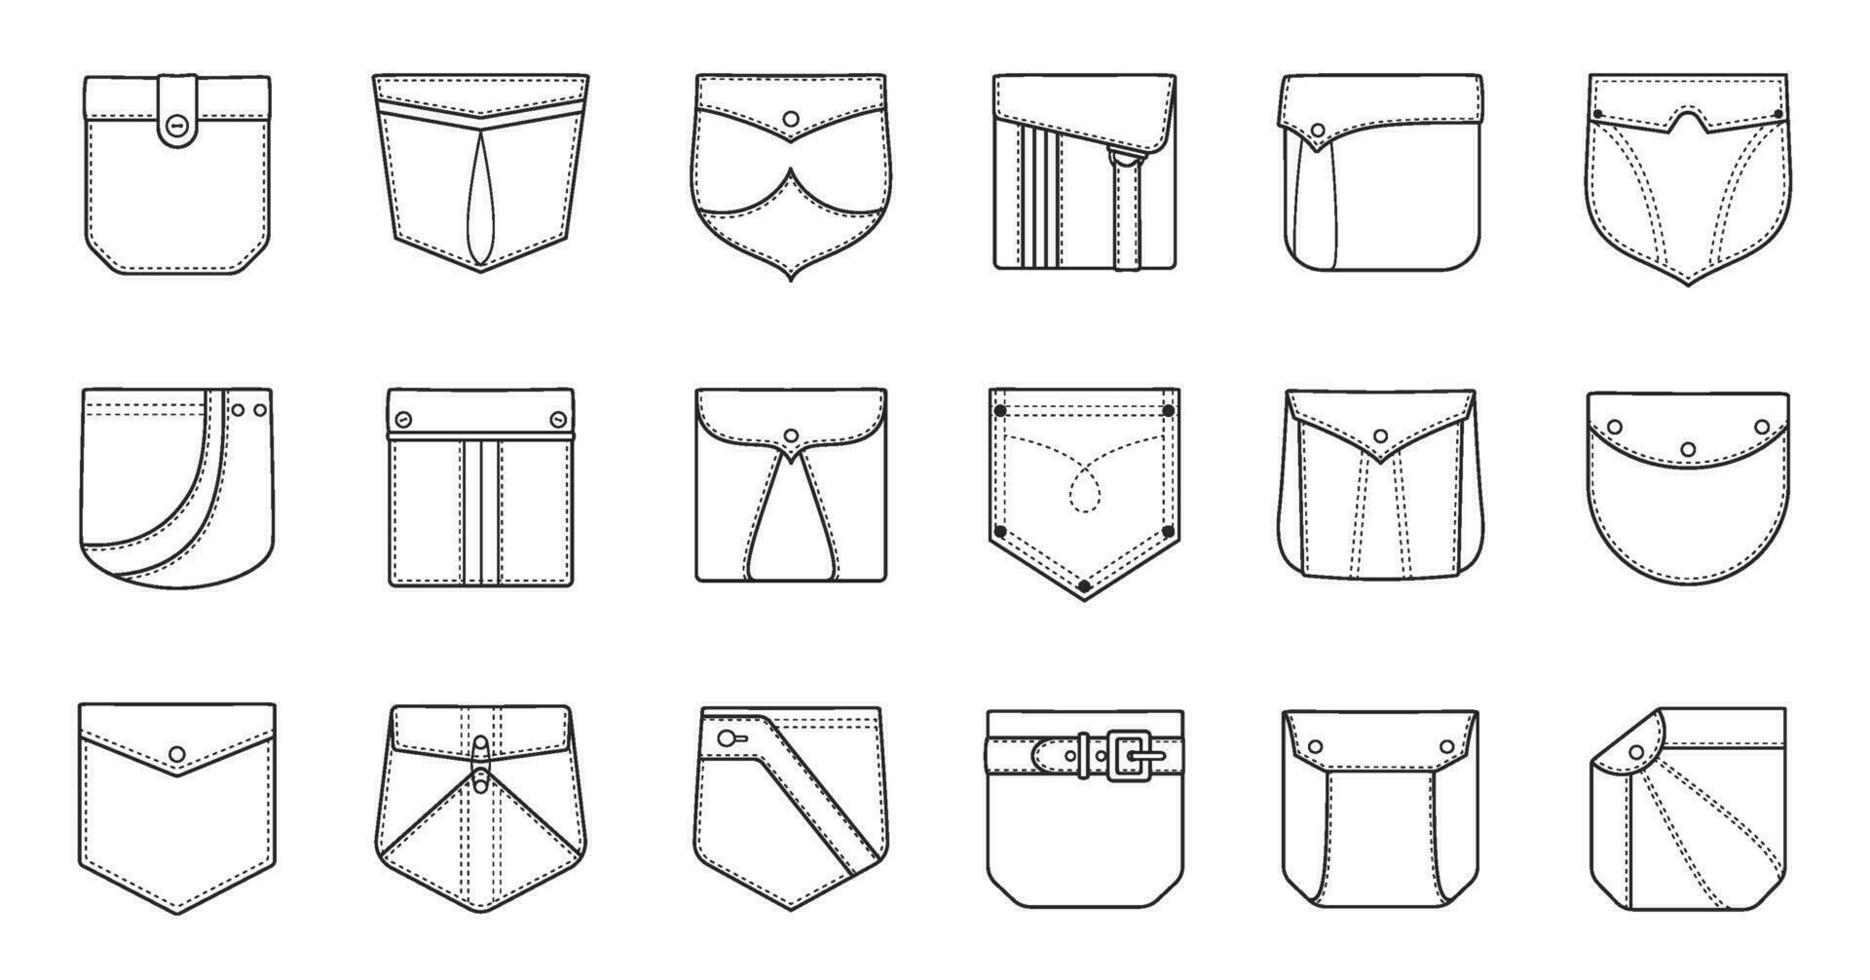 contorno parche bolsillos para camisas, carga pantalones y mezclilla chaquetas solapa bolsillo de coser patrones en diferente formas, tela parches vector conjunto